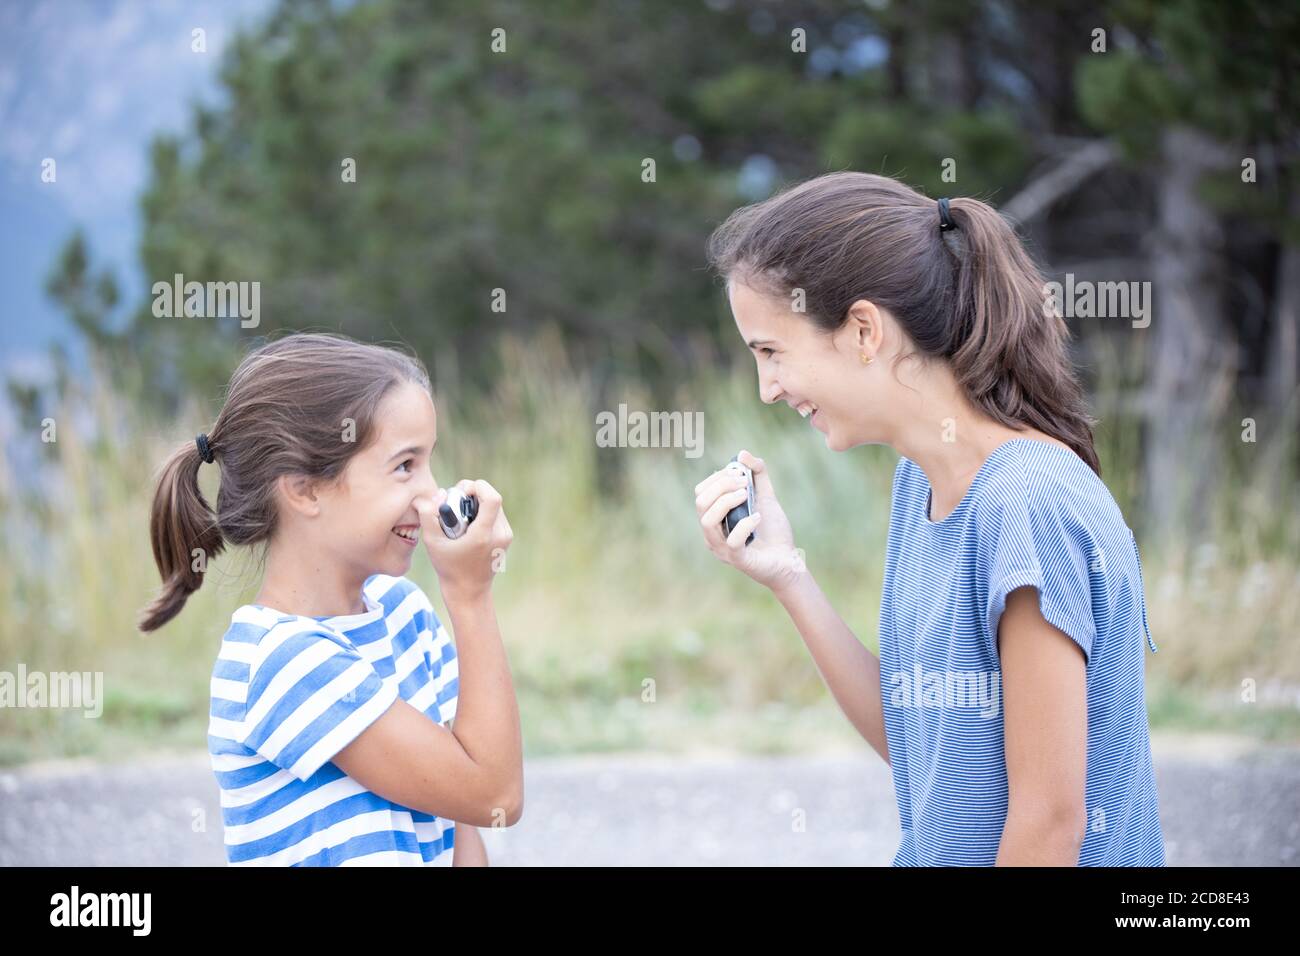 Zwei glückliche Schwestern sehr nahe reden und scherzen mit einem Walkie-Talkie Stockfoto